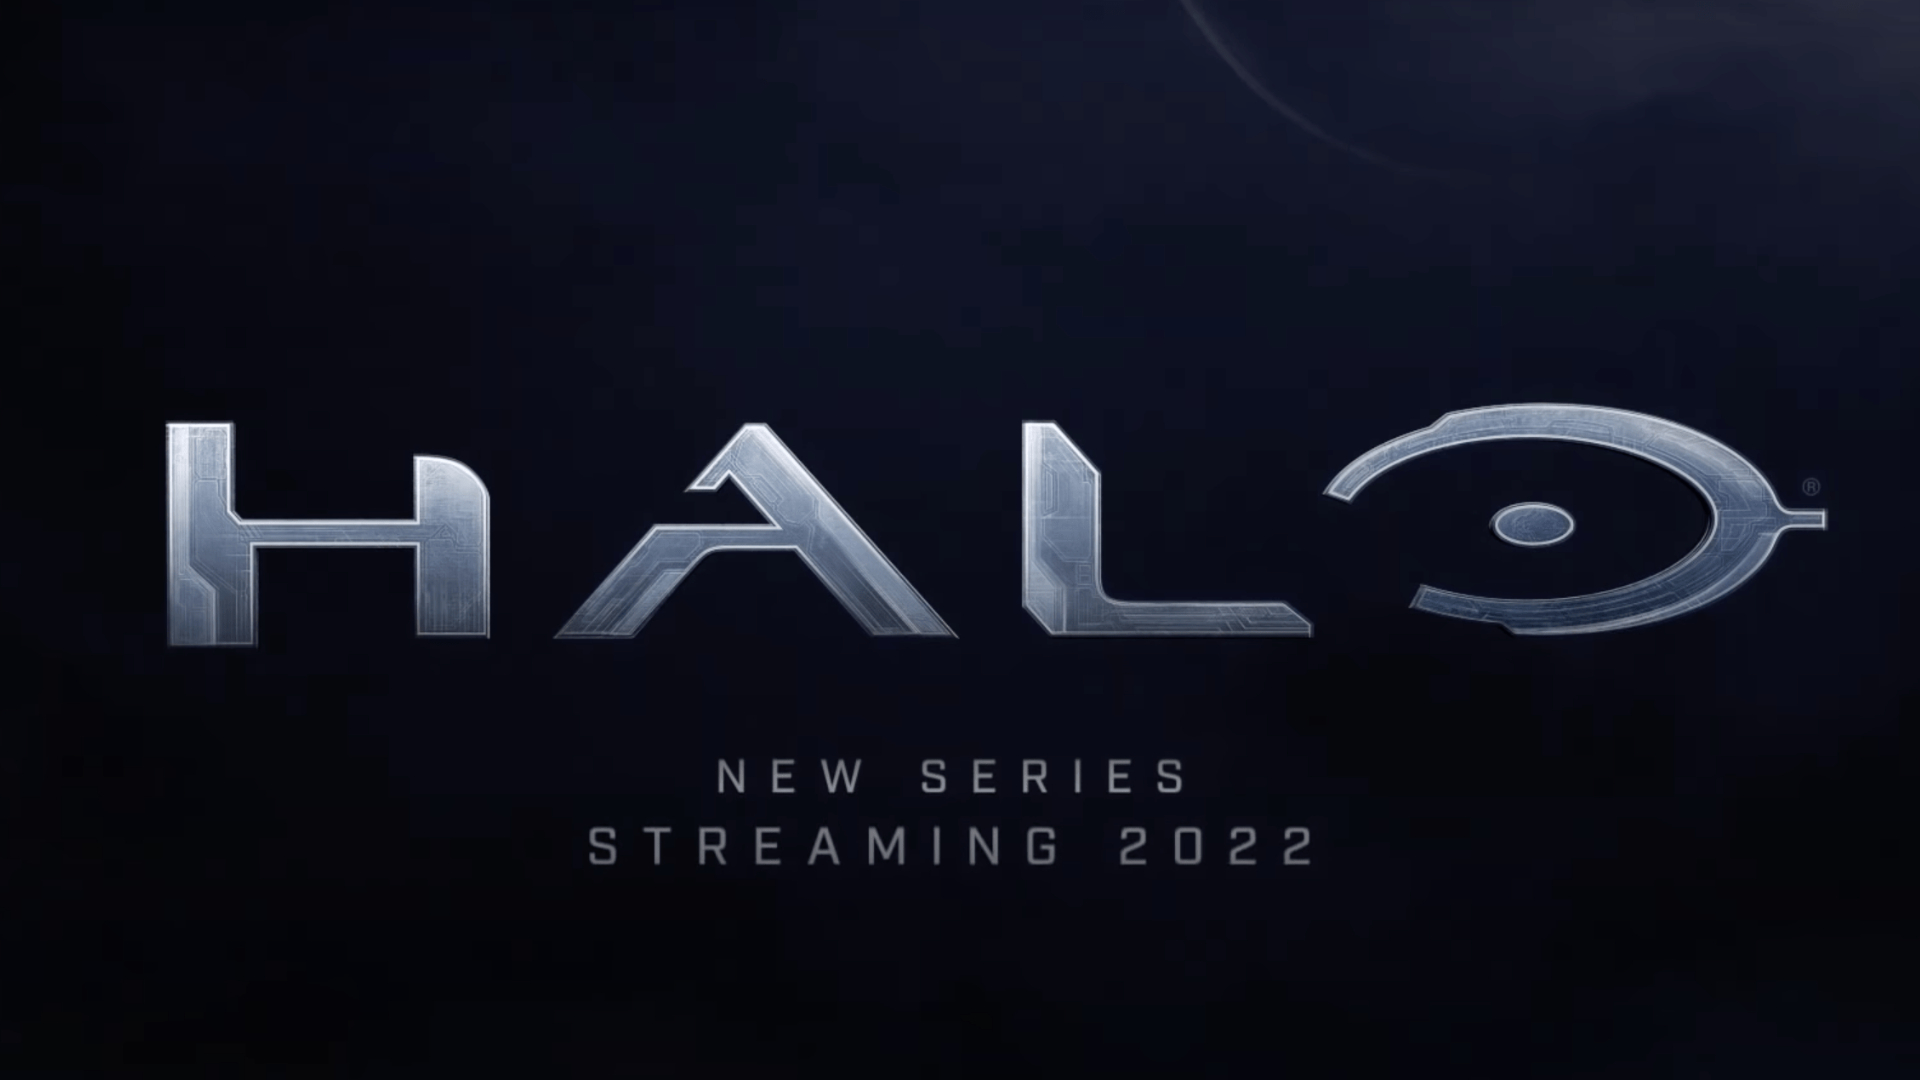 Halo : la série dérivée du jeu vidéo s'offre un nouveau teaser